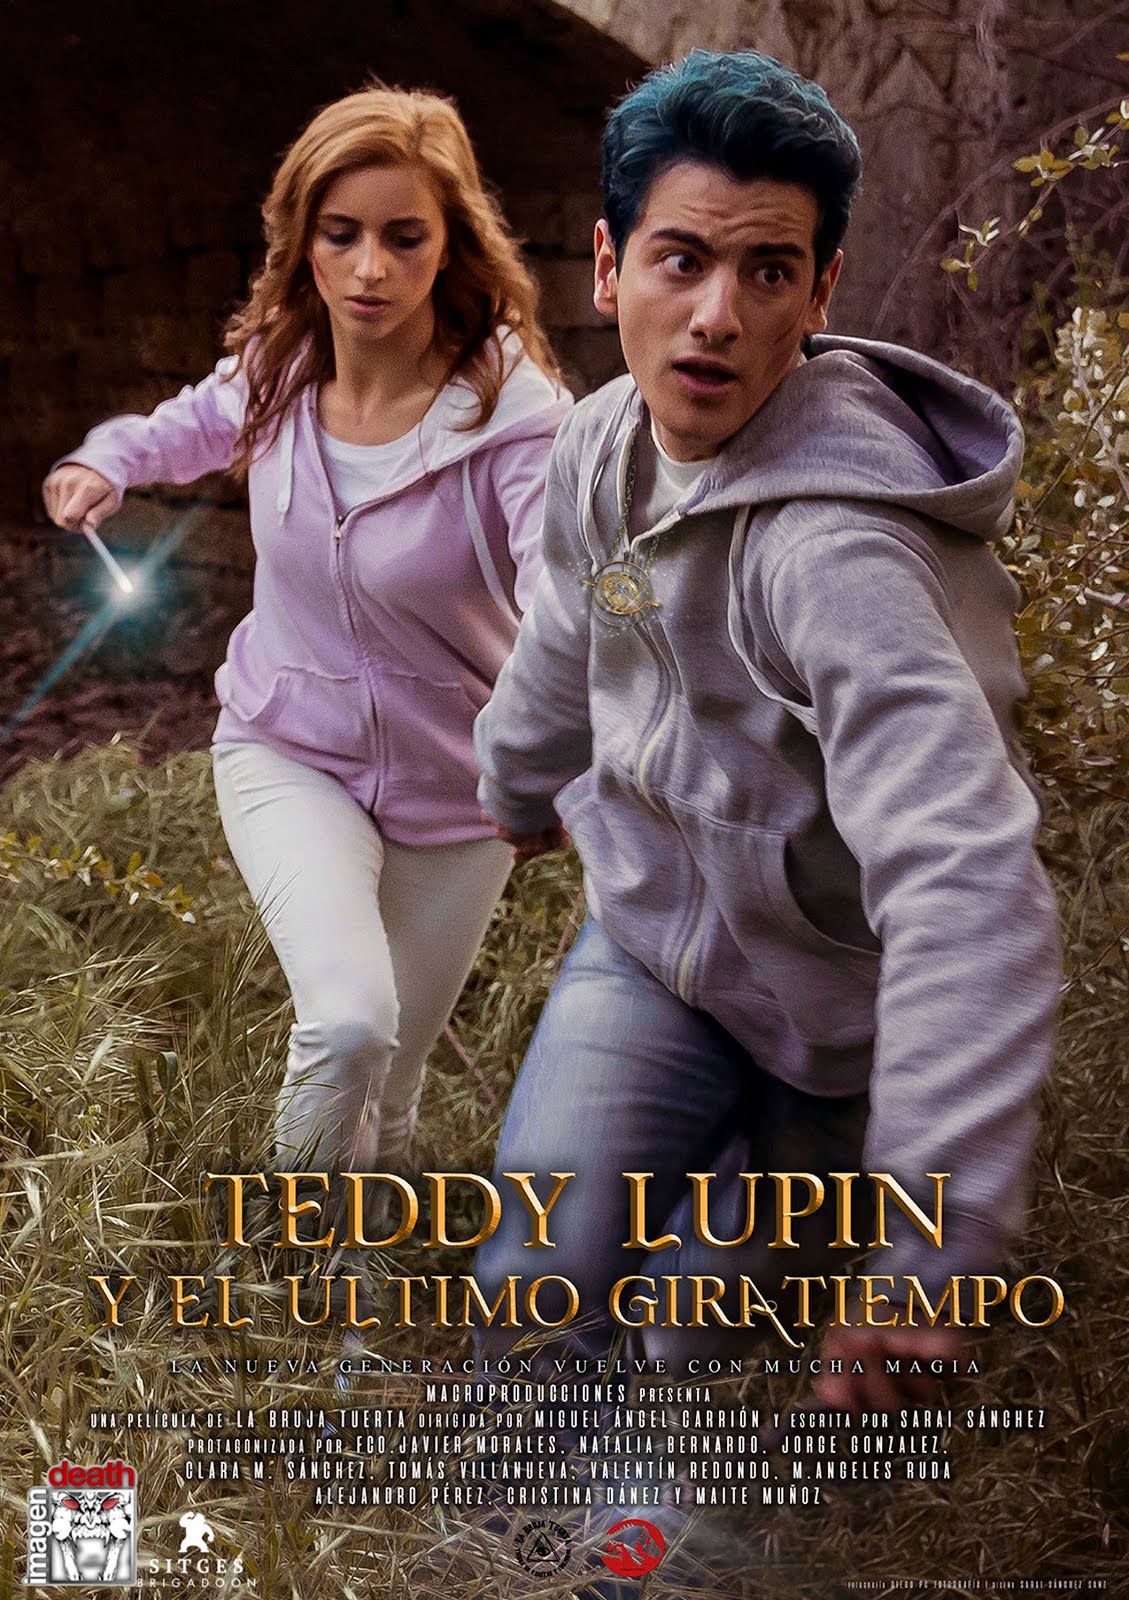 Teddy Lupin y el Último Giratiempo